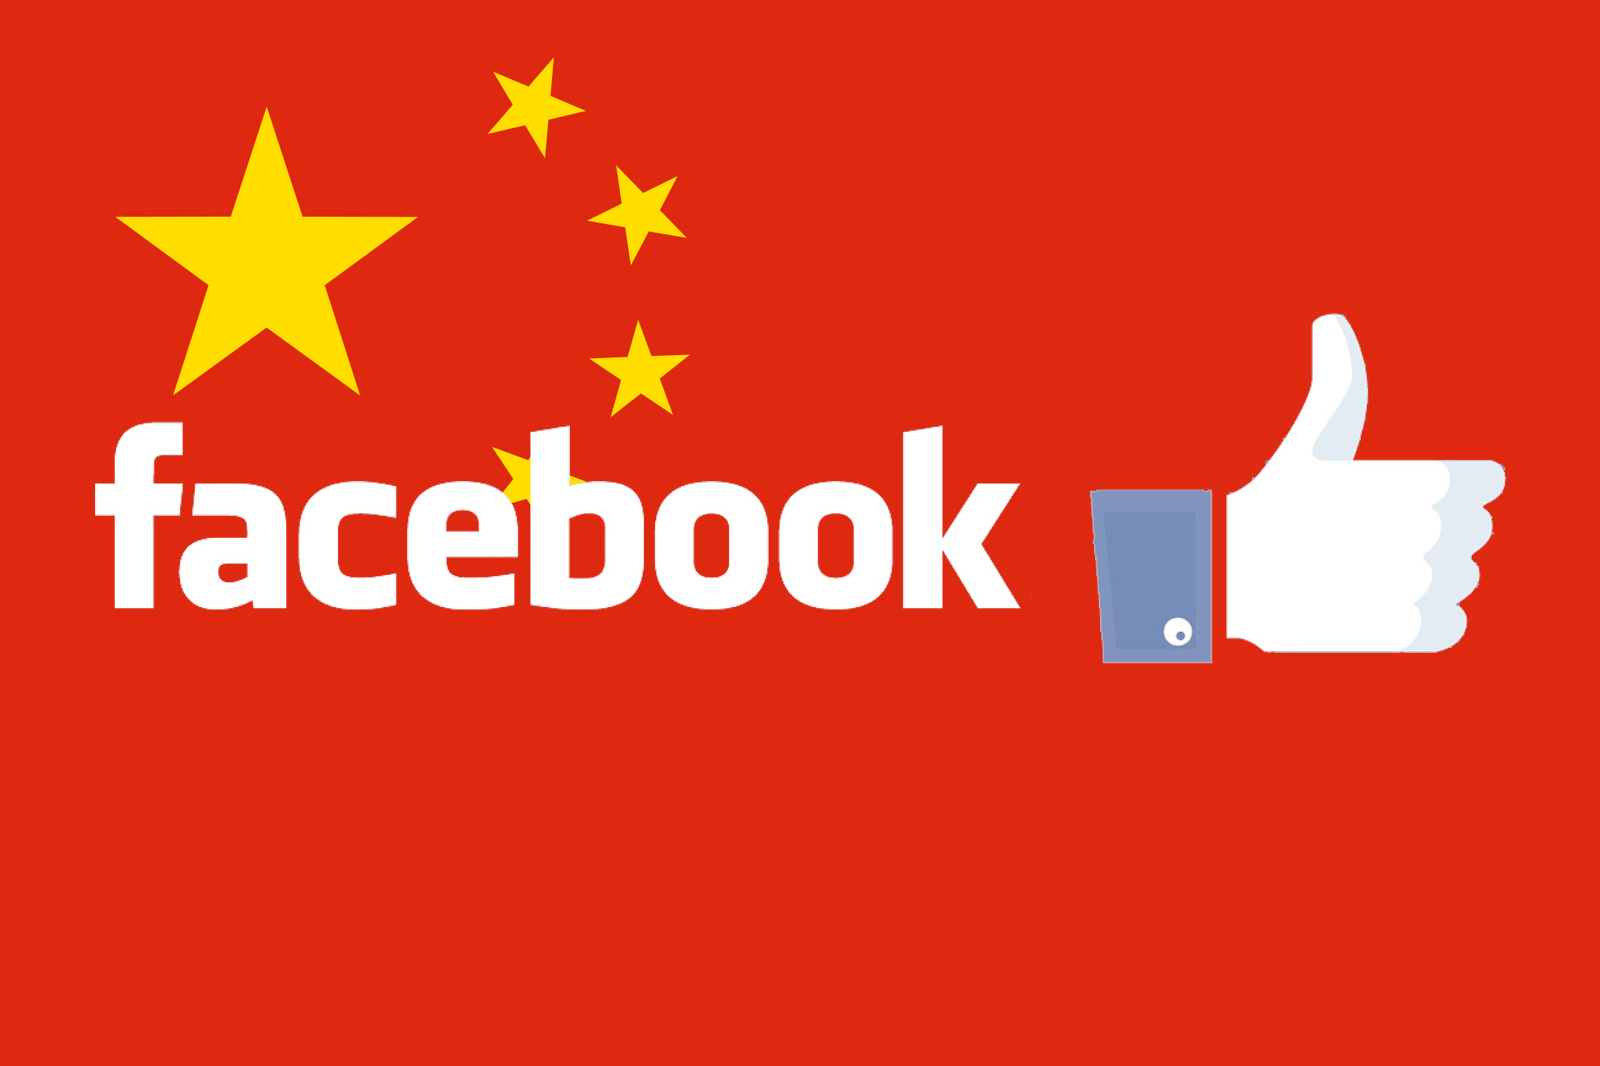 चीनमा फेसबुक !